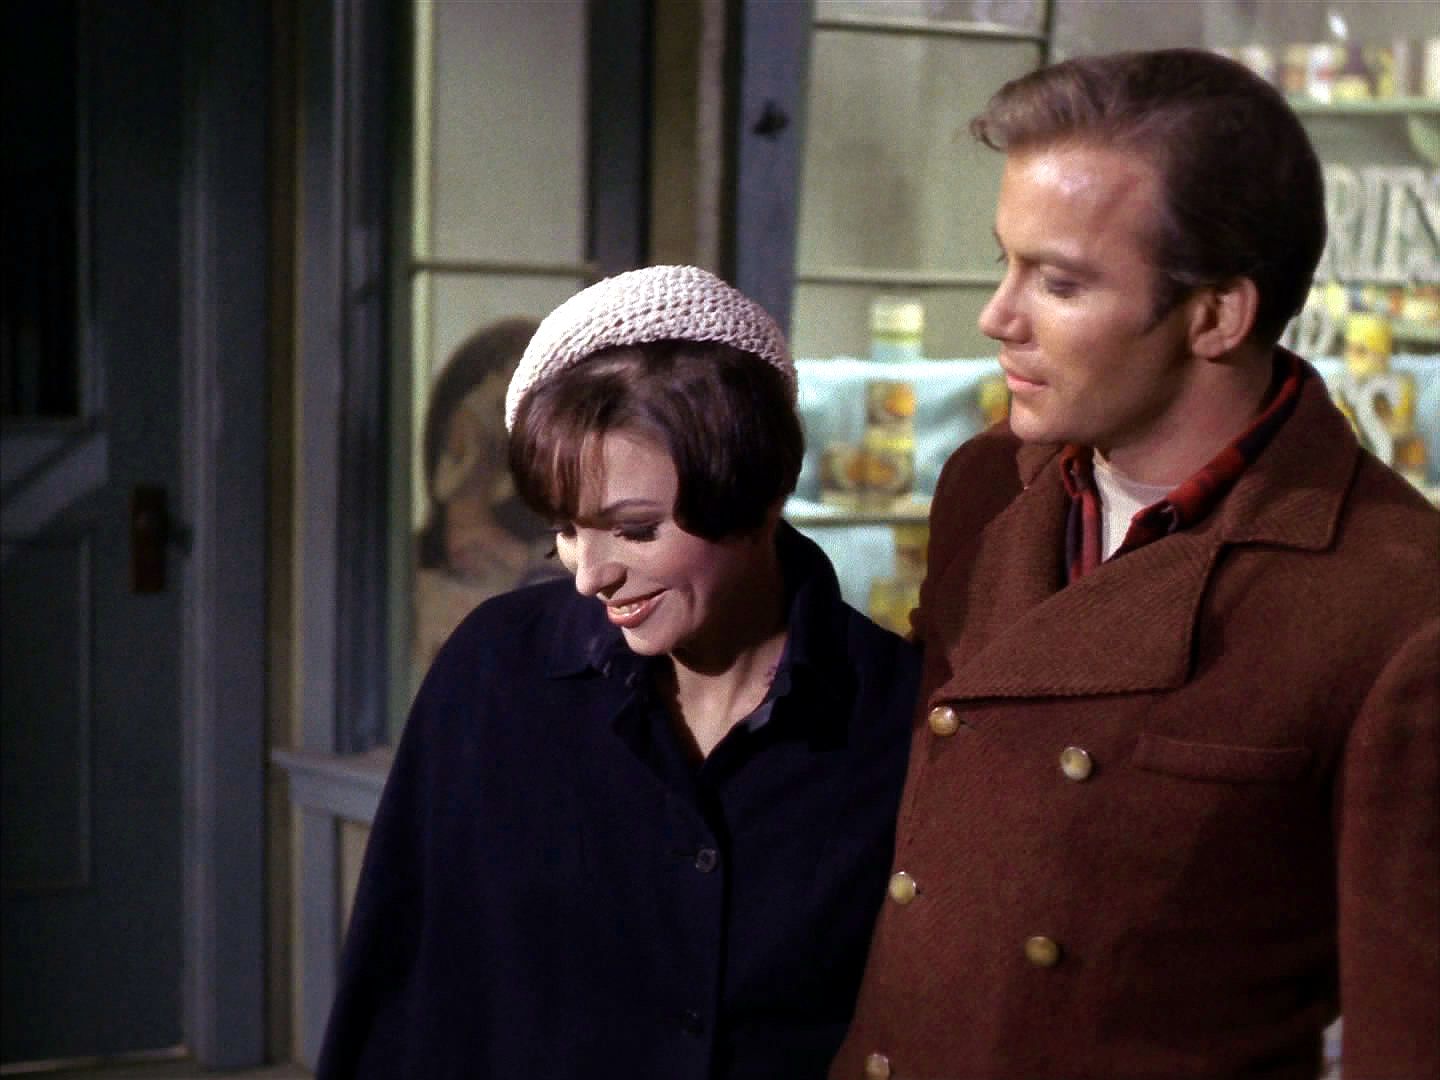 Kirk zatím našel v Edith spřízněnou duši a zamiloval se.